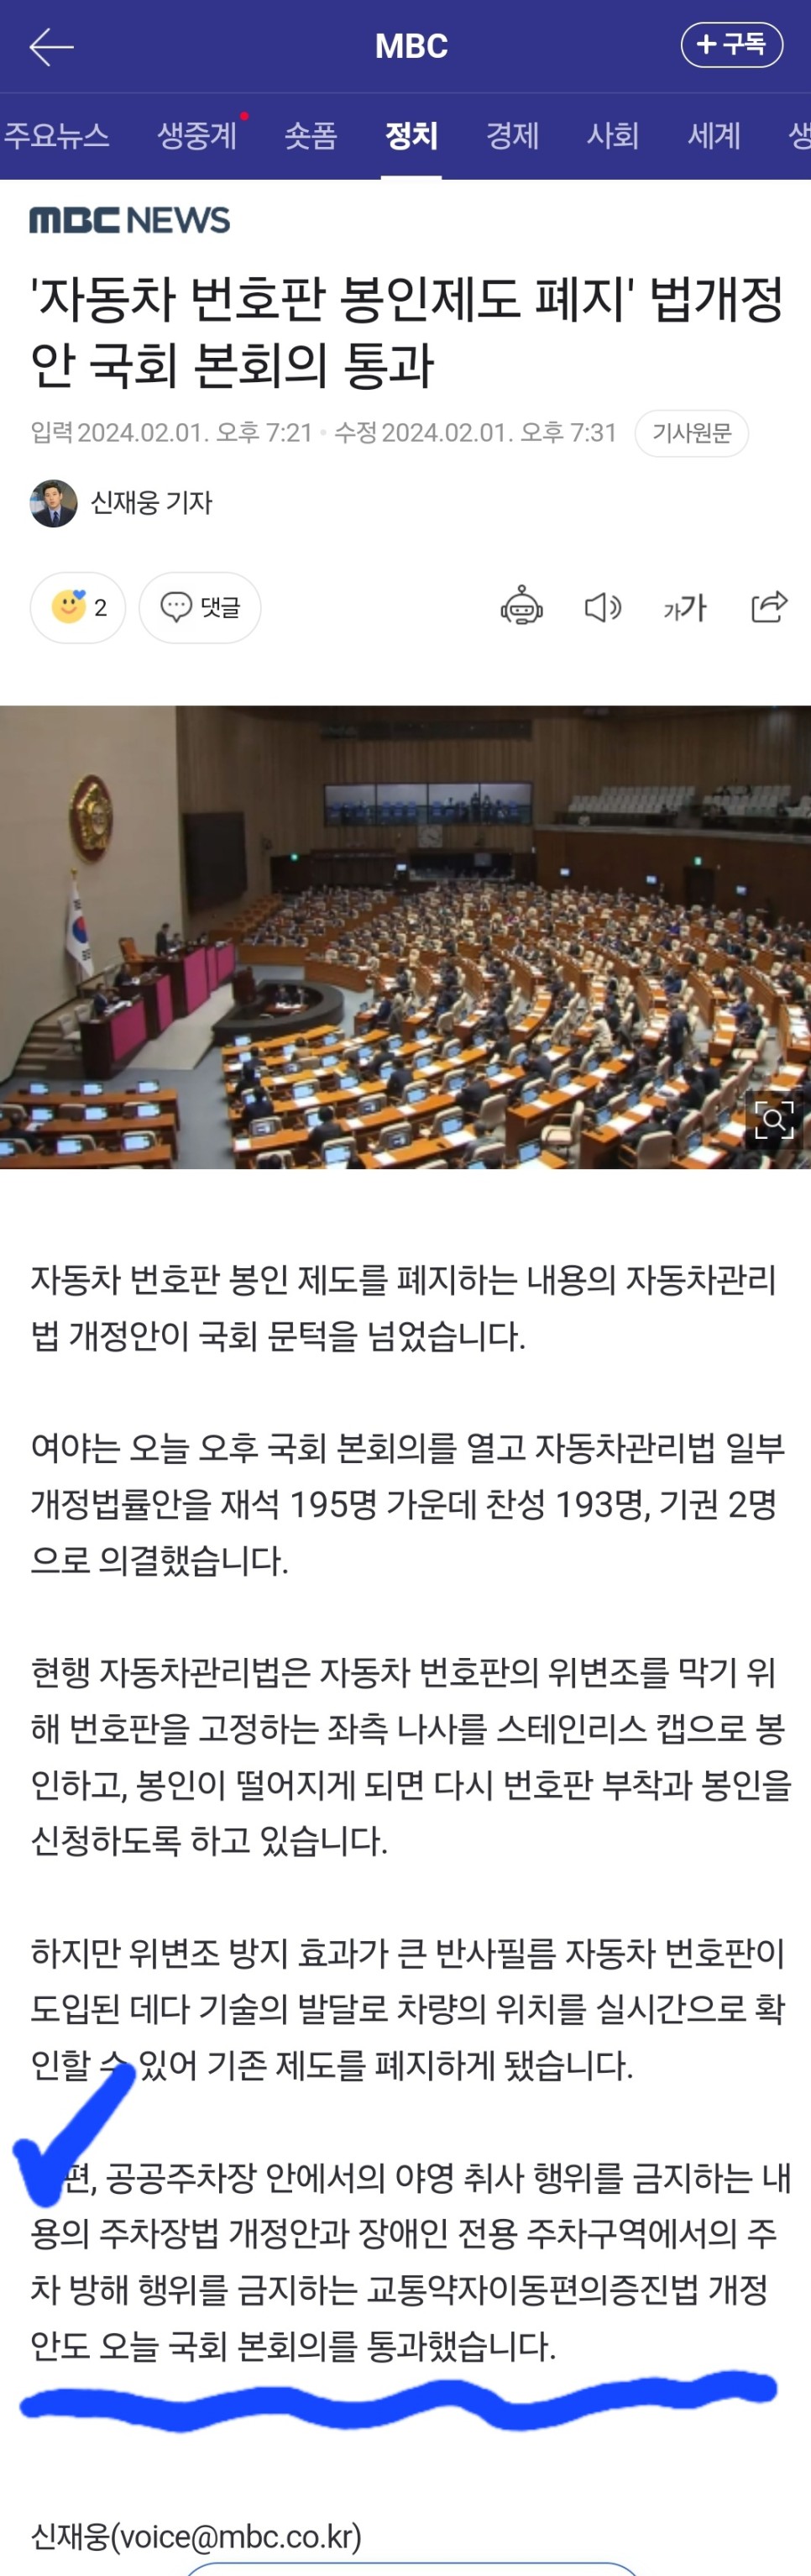 주차장법 개정안 차박금지법 국회 본회의 통과는 가짜뉴스?